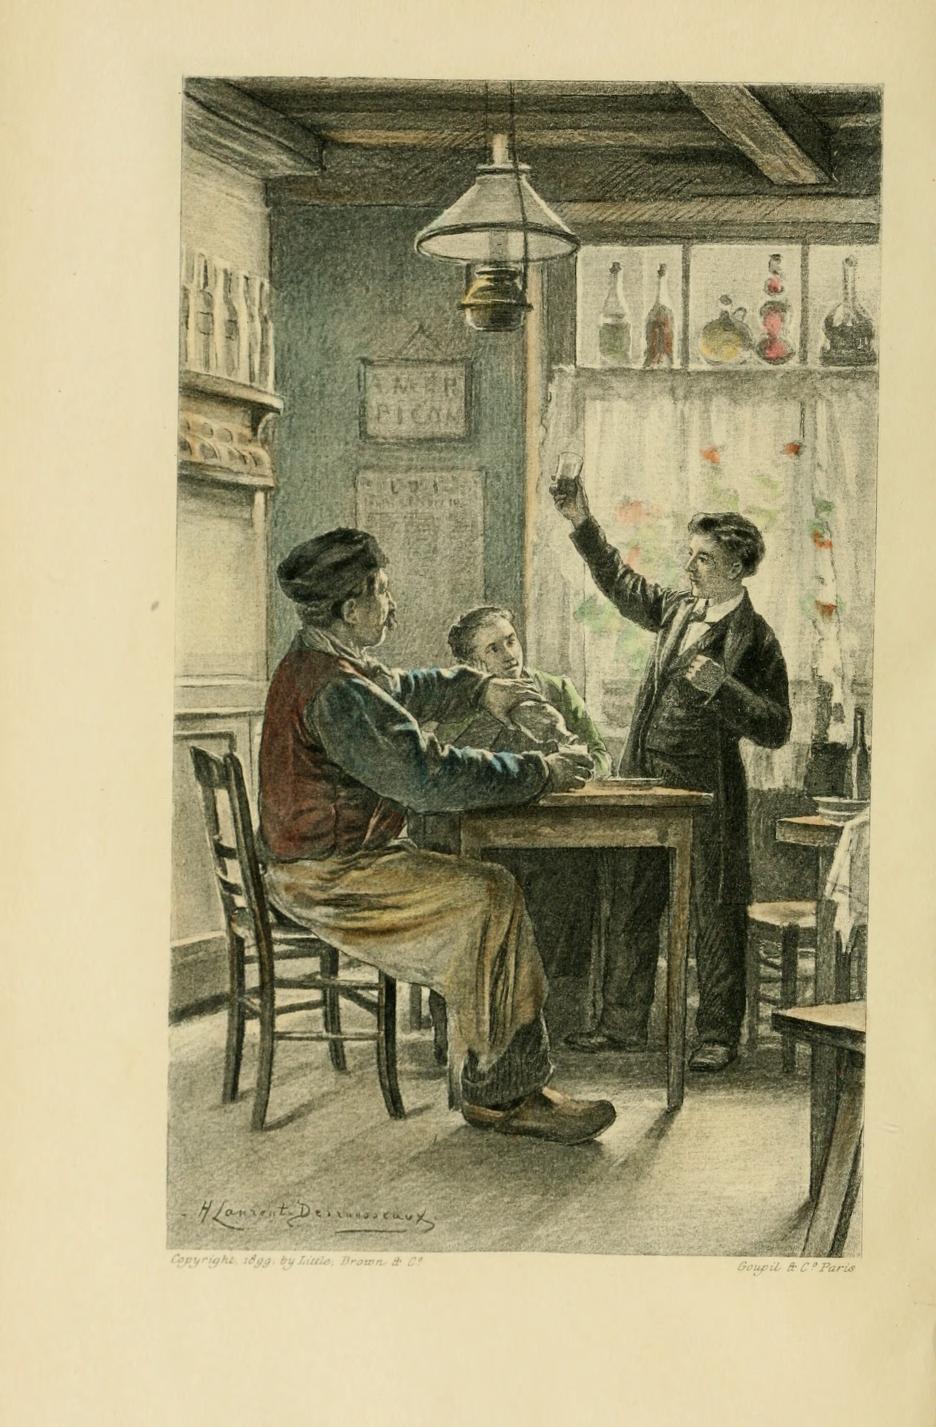 Couverture du Petit Chose d’Alphonse Daudet, publié par The Society of French and English Literature, à New-York en 1898.
